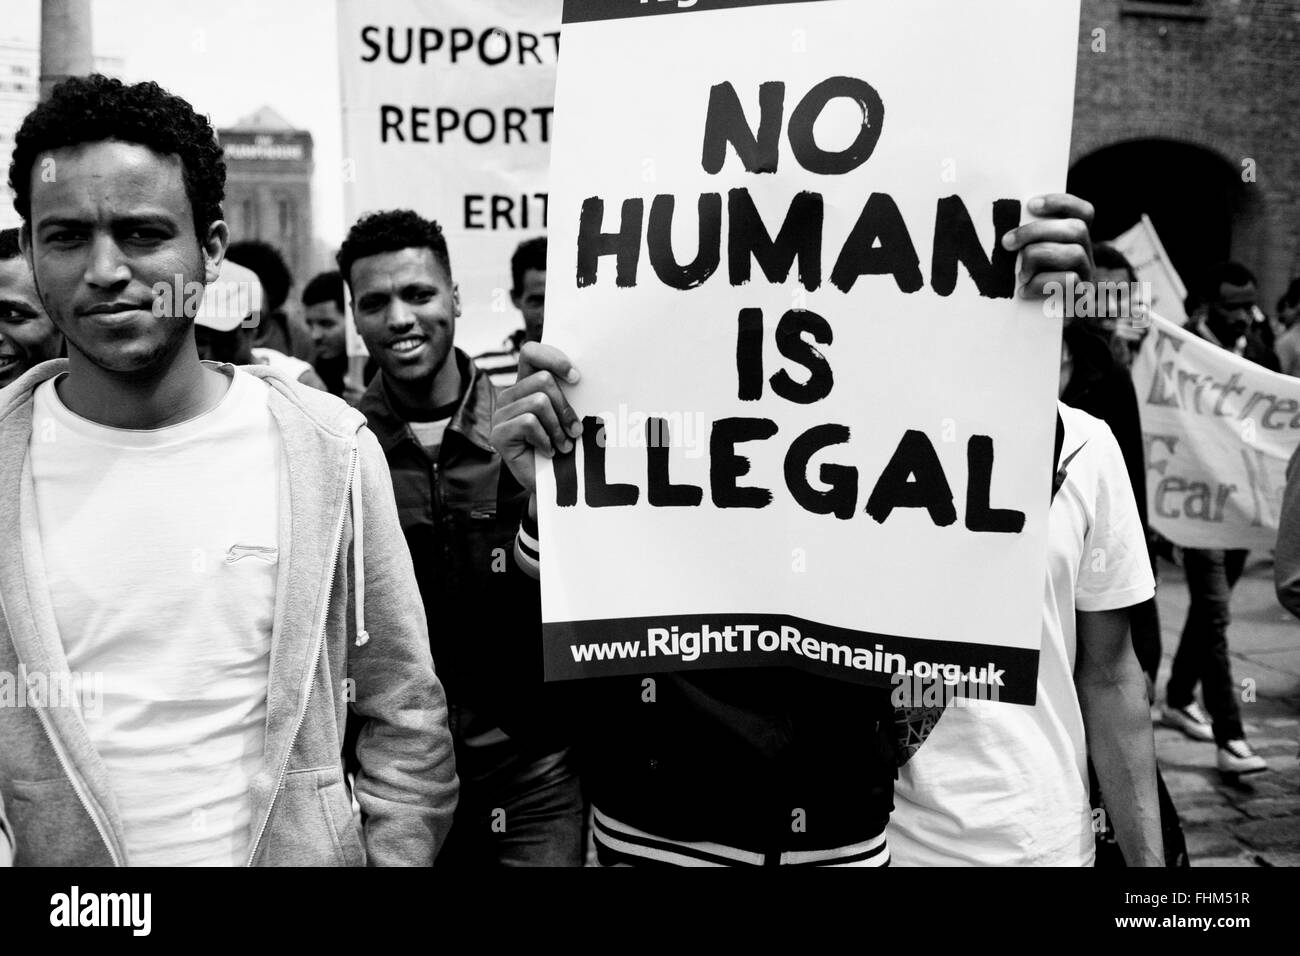 Réfugiés de l'Érythrée à l'Albert Dock de Liverpool - Royaume-Uni Banque D'Images